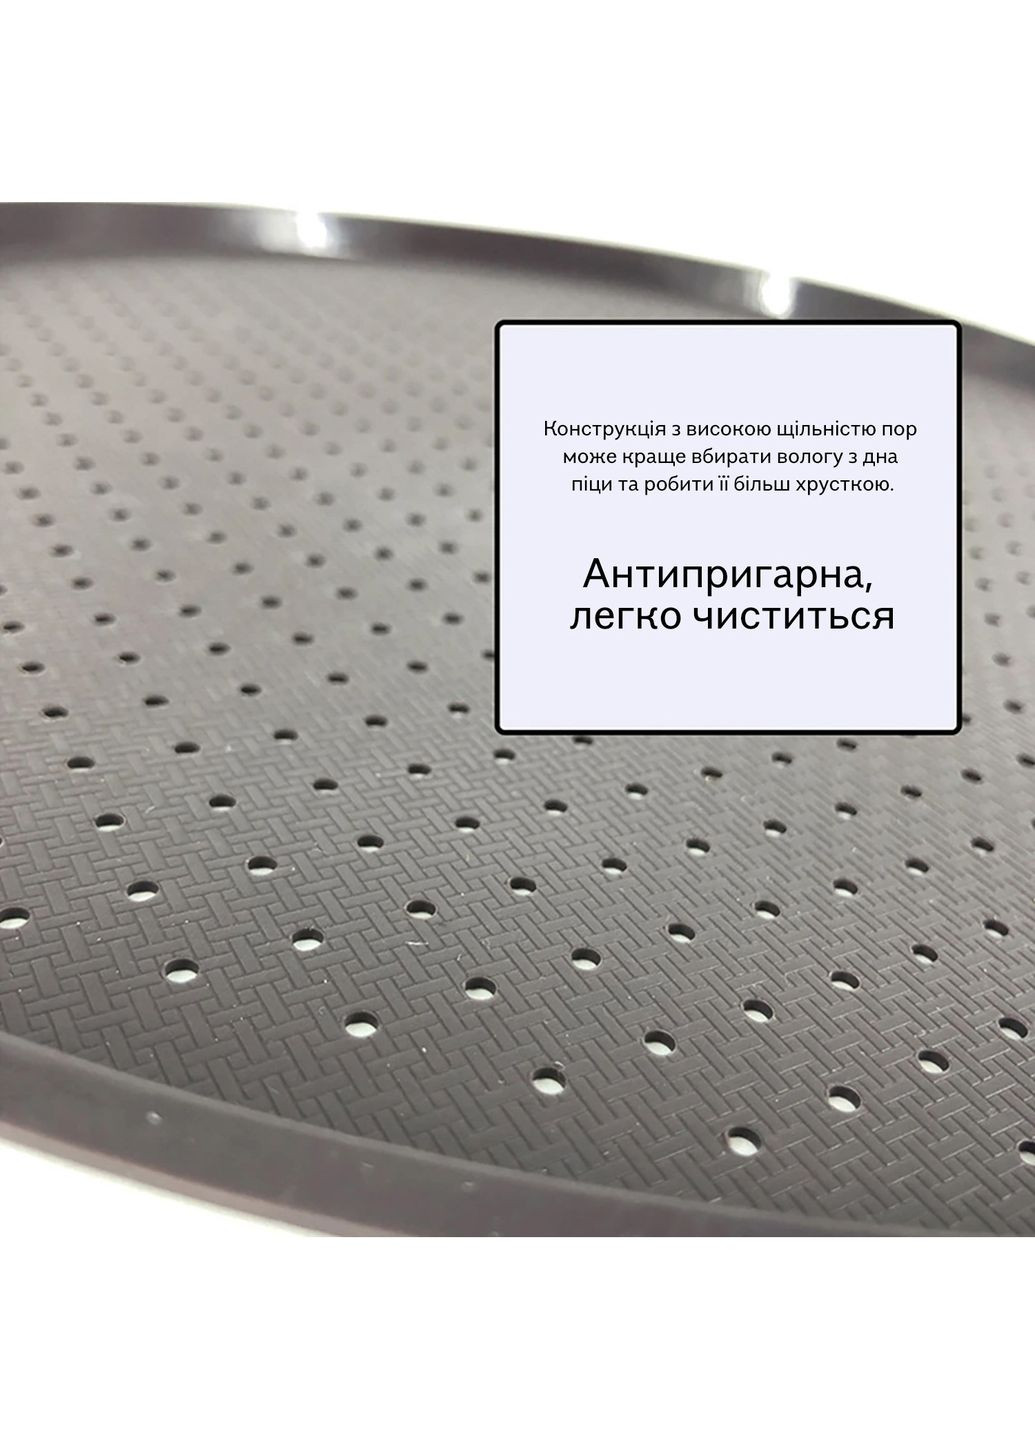 Форма силиконовая антипригарная перфорированная для выпечки пиццы Ø 34.5 см Kitchen Master (284281746)